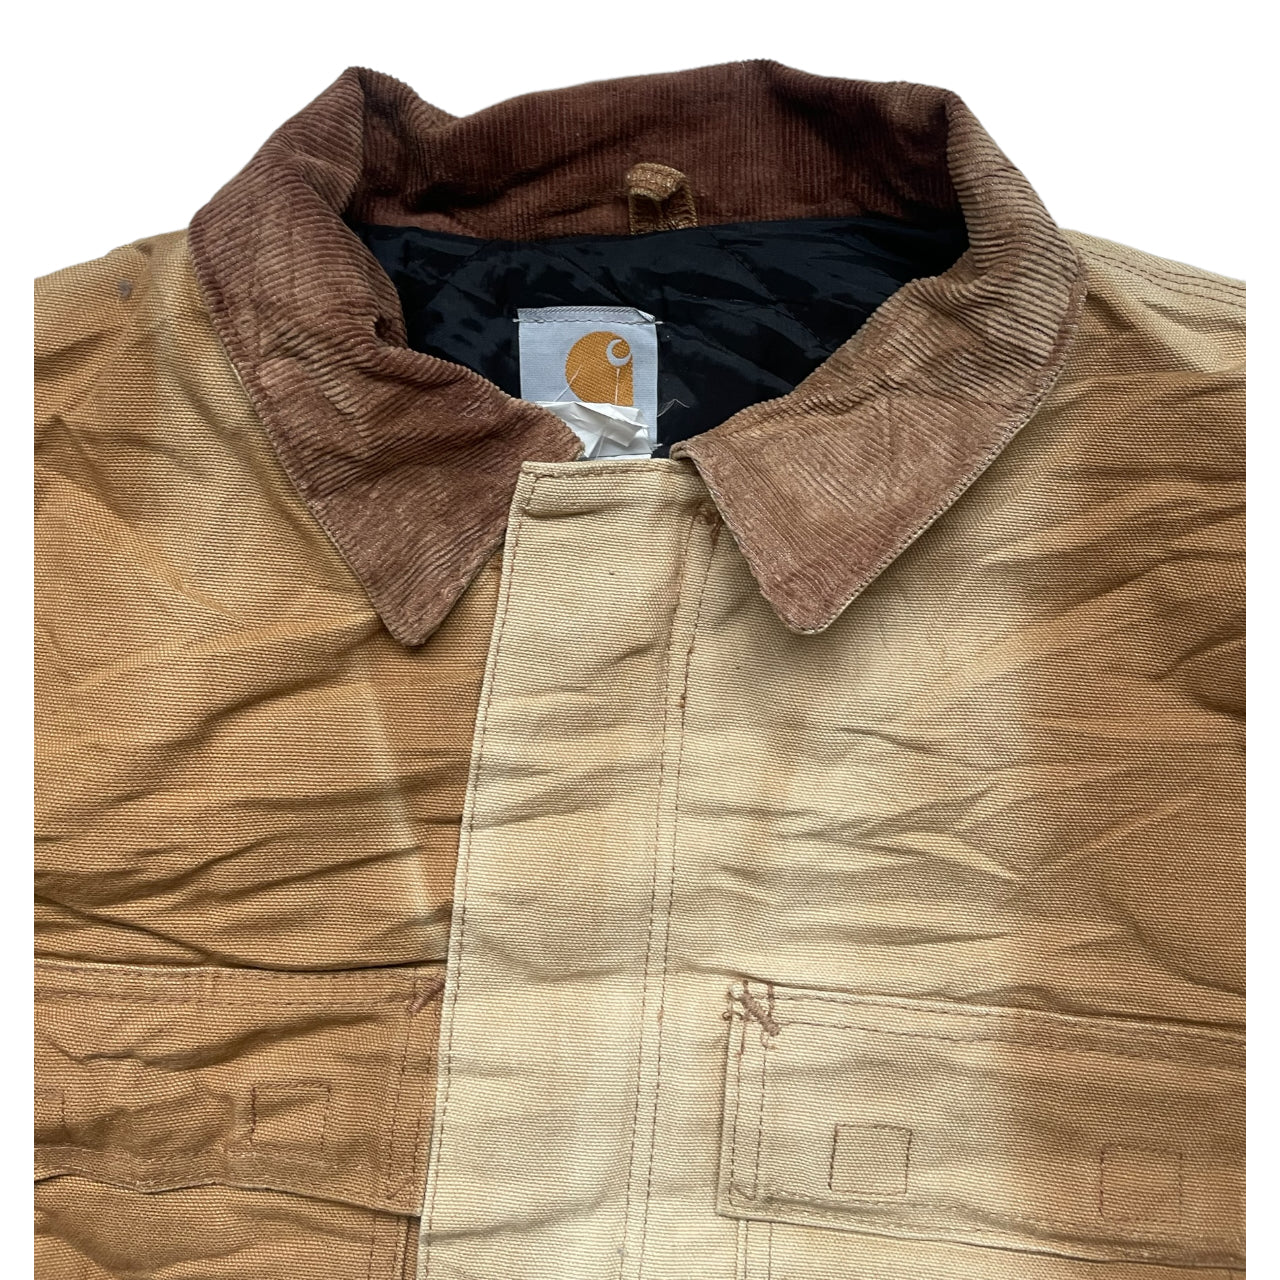 Vintage Carhartt Detroit Jacket Workwear L Size Camel A_44